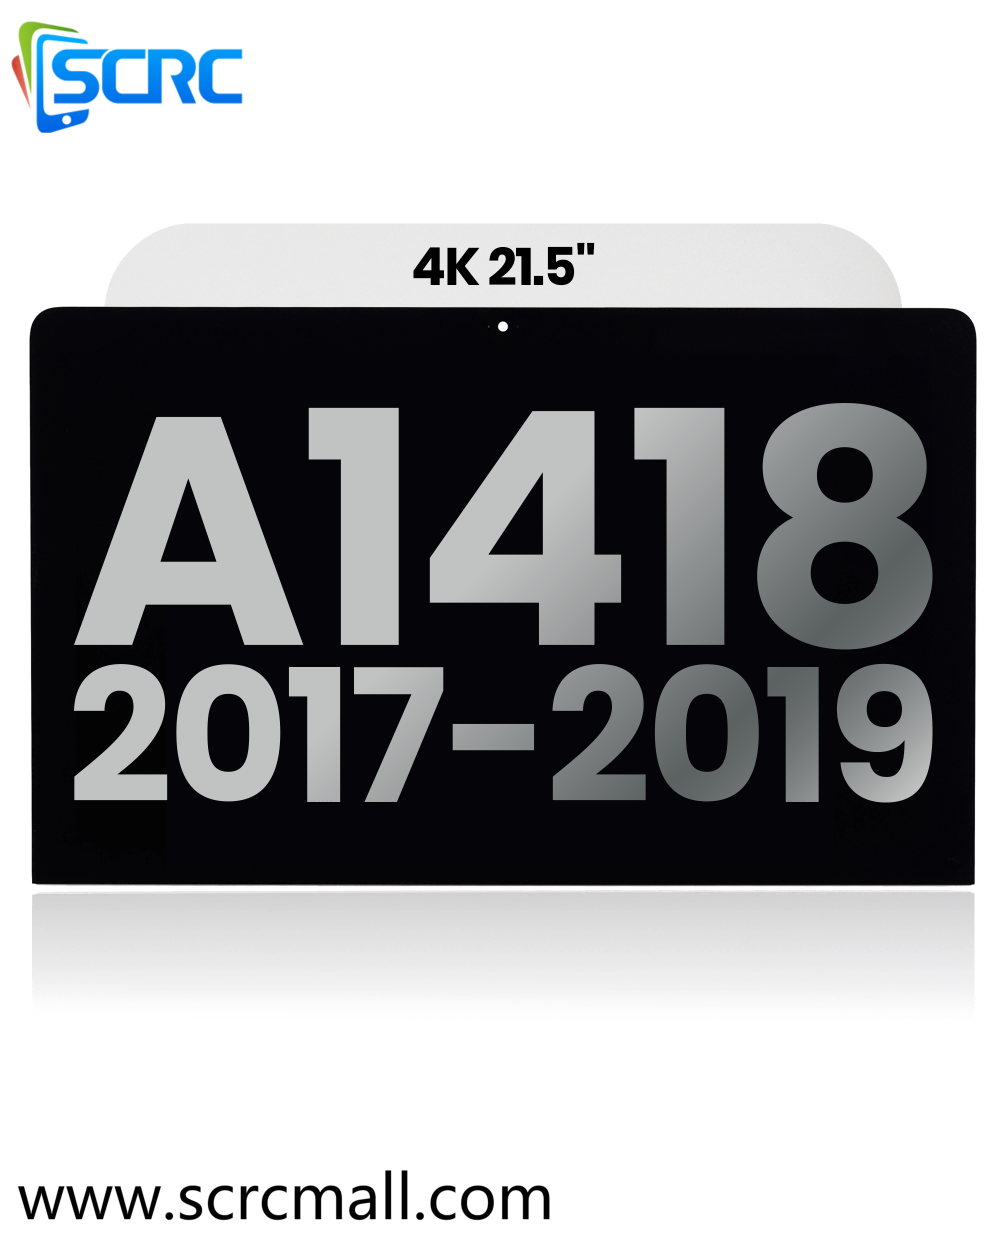 مجموعة شاشة LCD لـ iMac مقاس 21.5 بوصة 4K (A1418،2017-2019) - 0